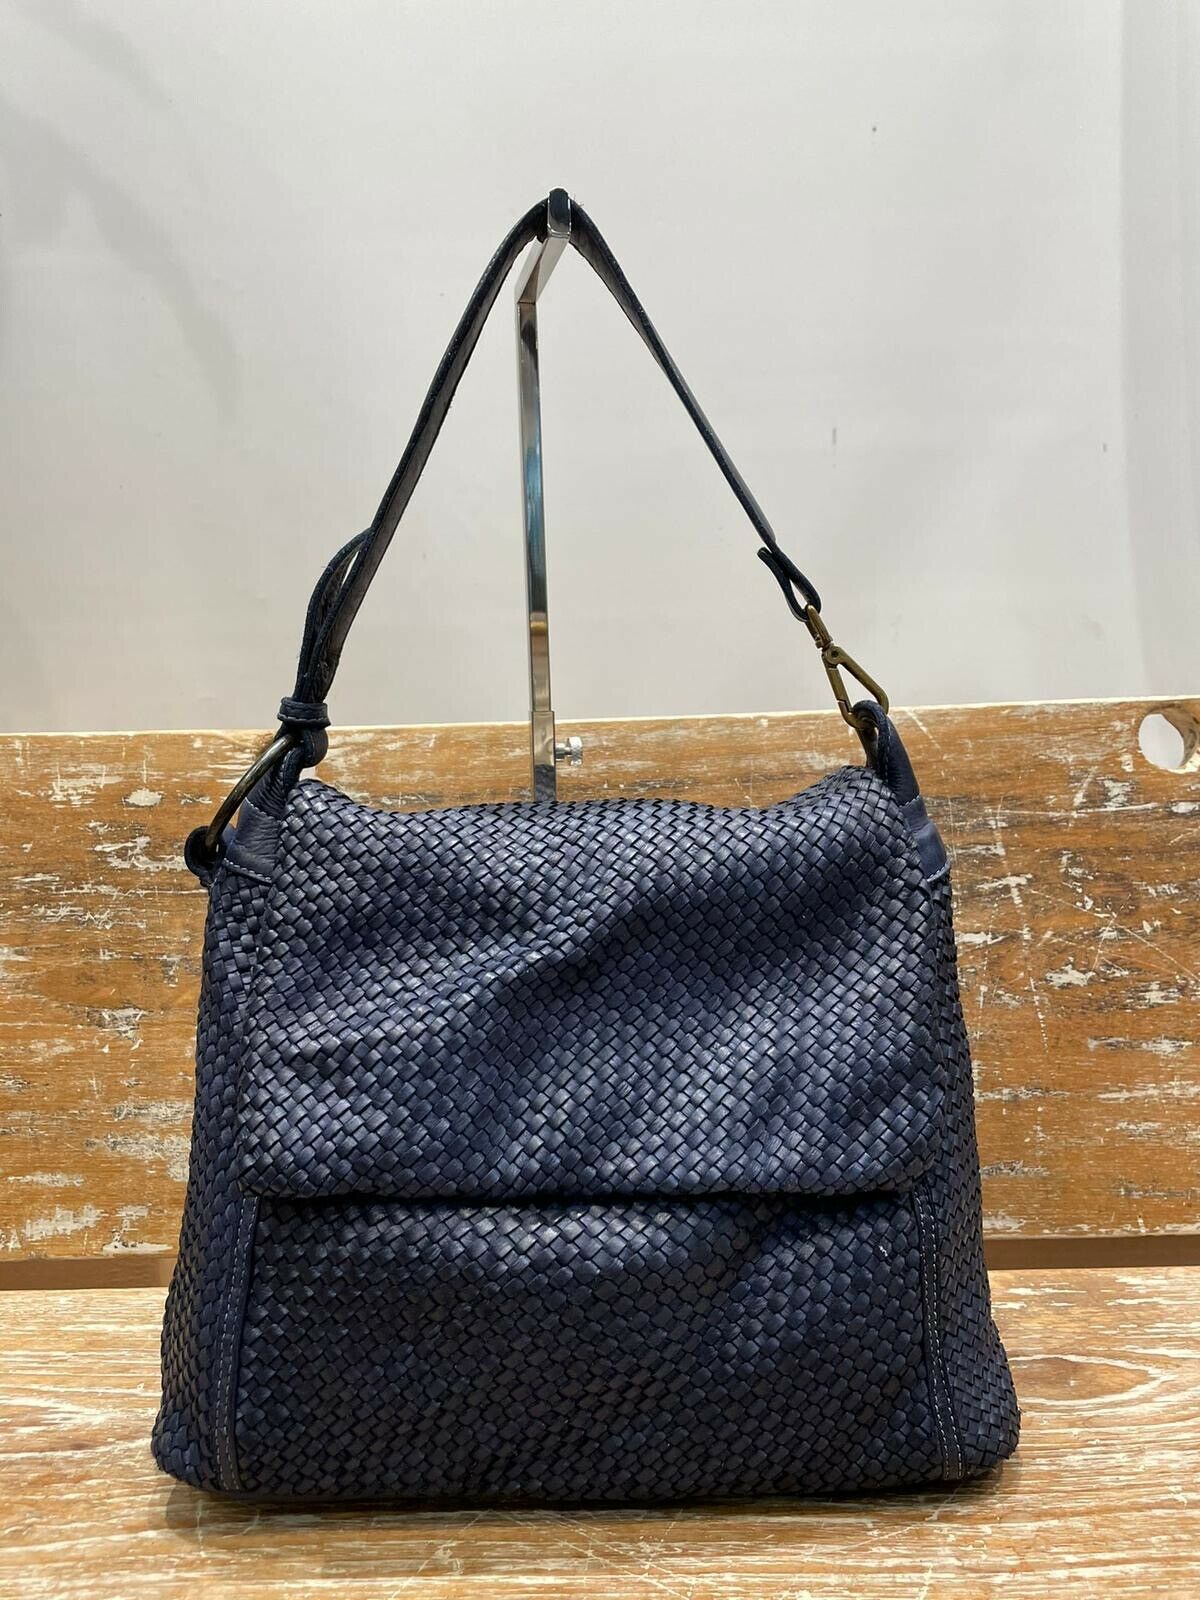 BZNA Bag Tarja Blau Italy Designer Messenger Damen Handtasche Schultertasche